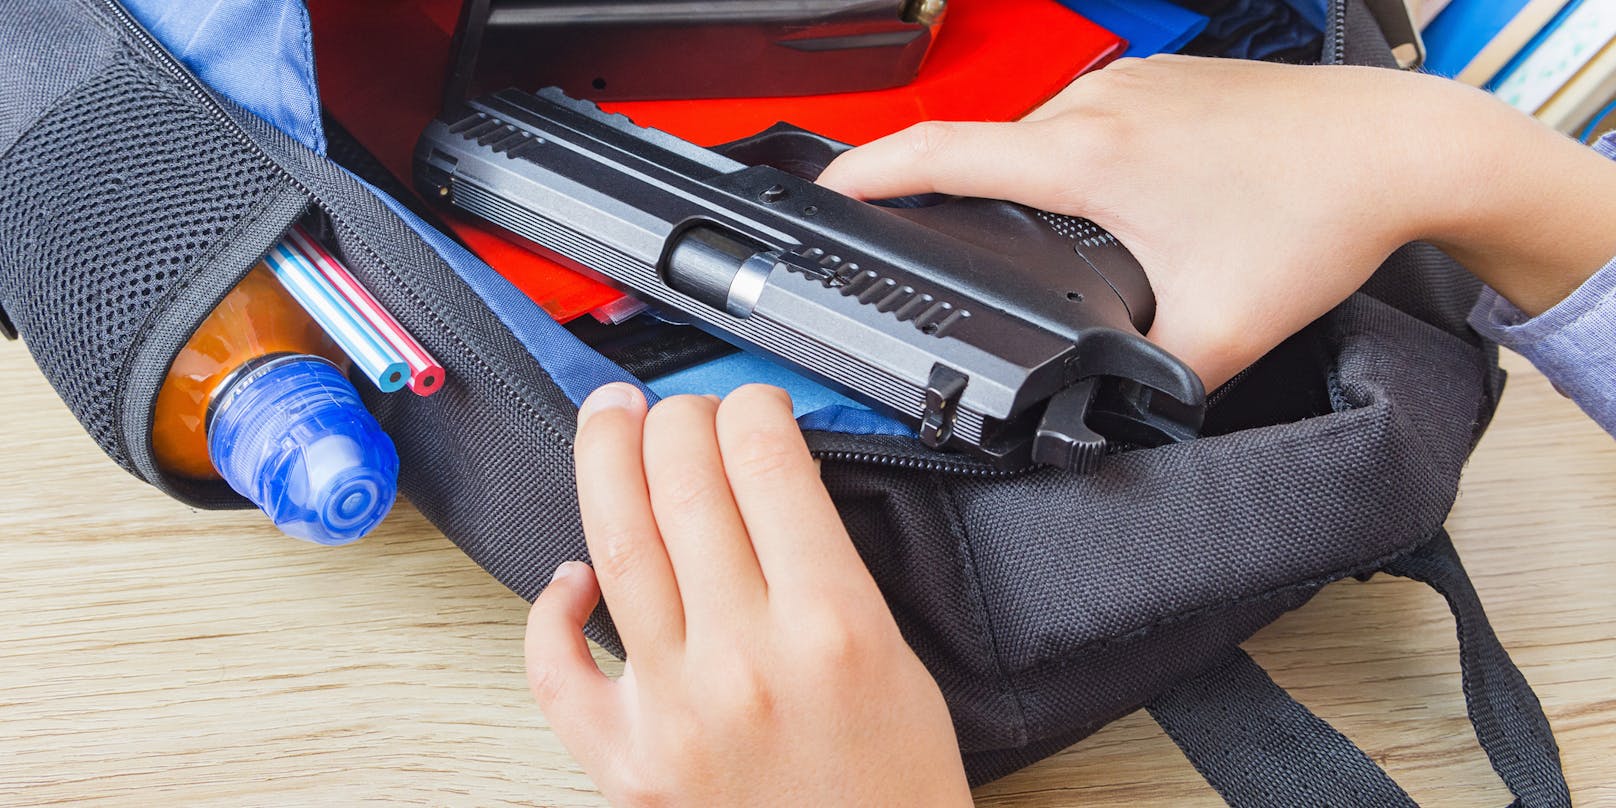 Ein junger Schüler zieht eine Pistole aus seinem Rucksack. (Symbolbild)